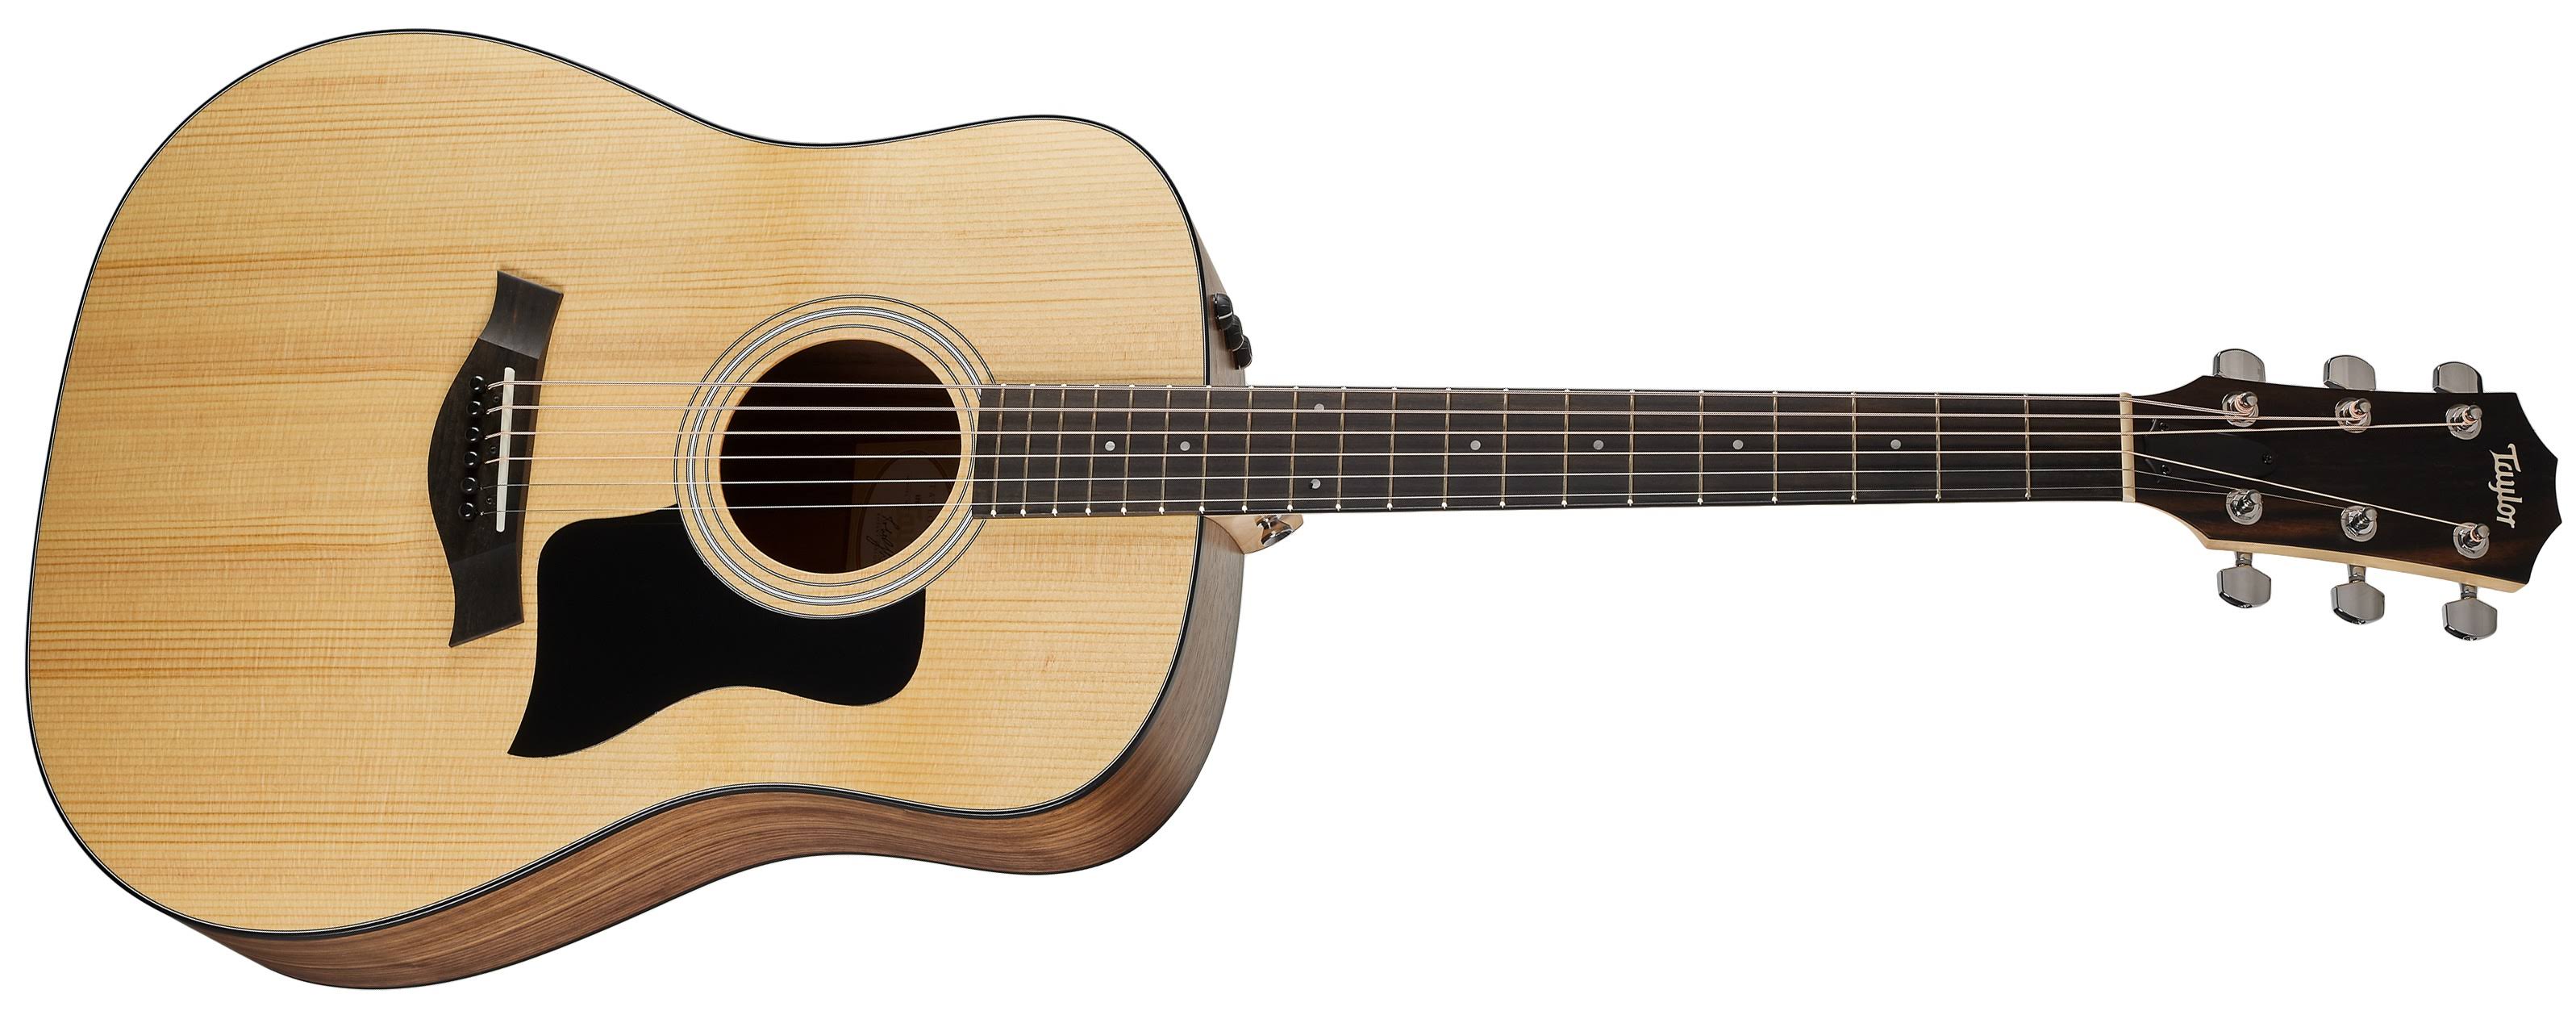 Taylor 110e Dreadnought Acoustic Guitar